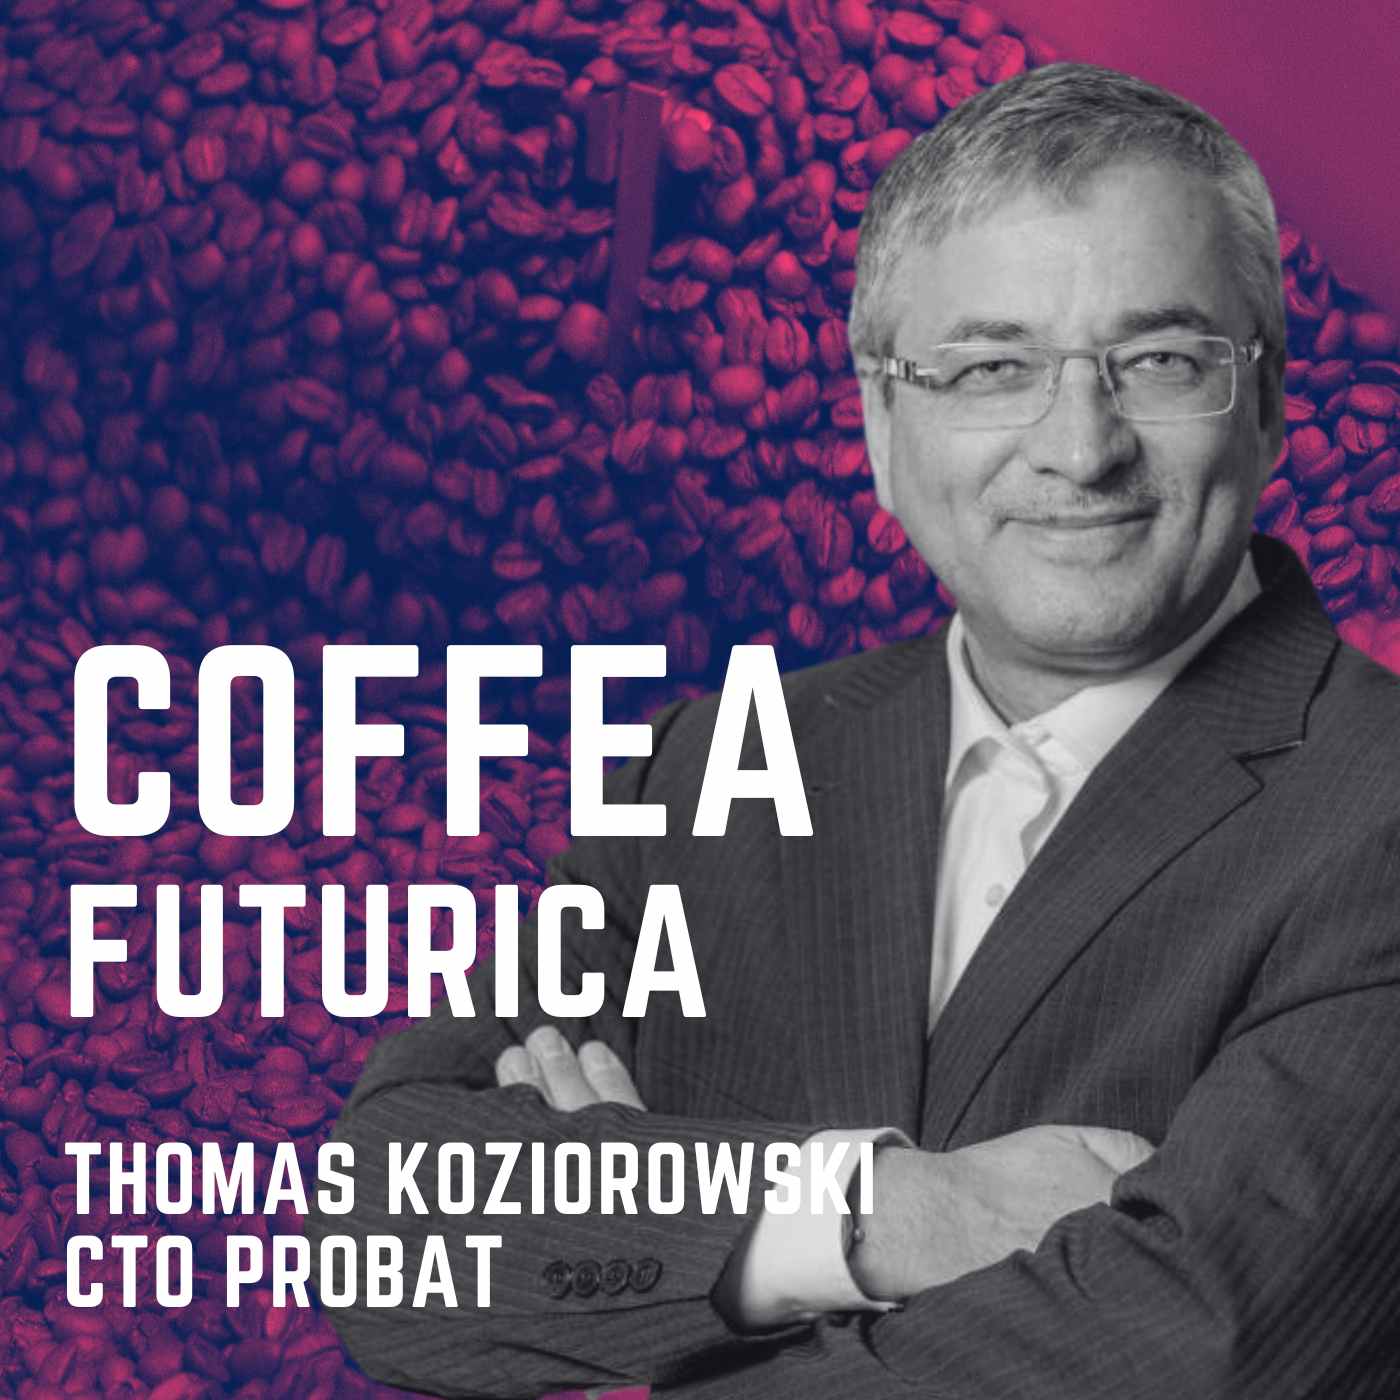 Übers Kaffeerösten mit dem Probat-CTO